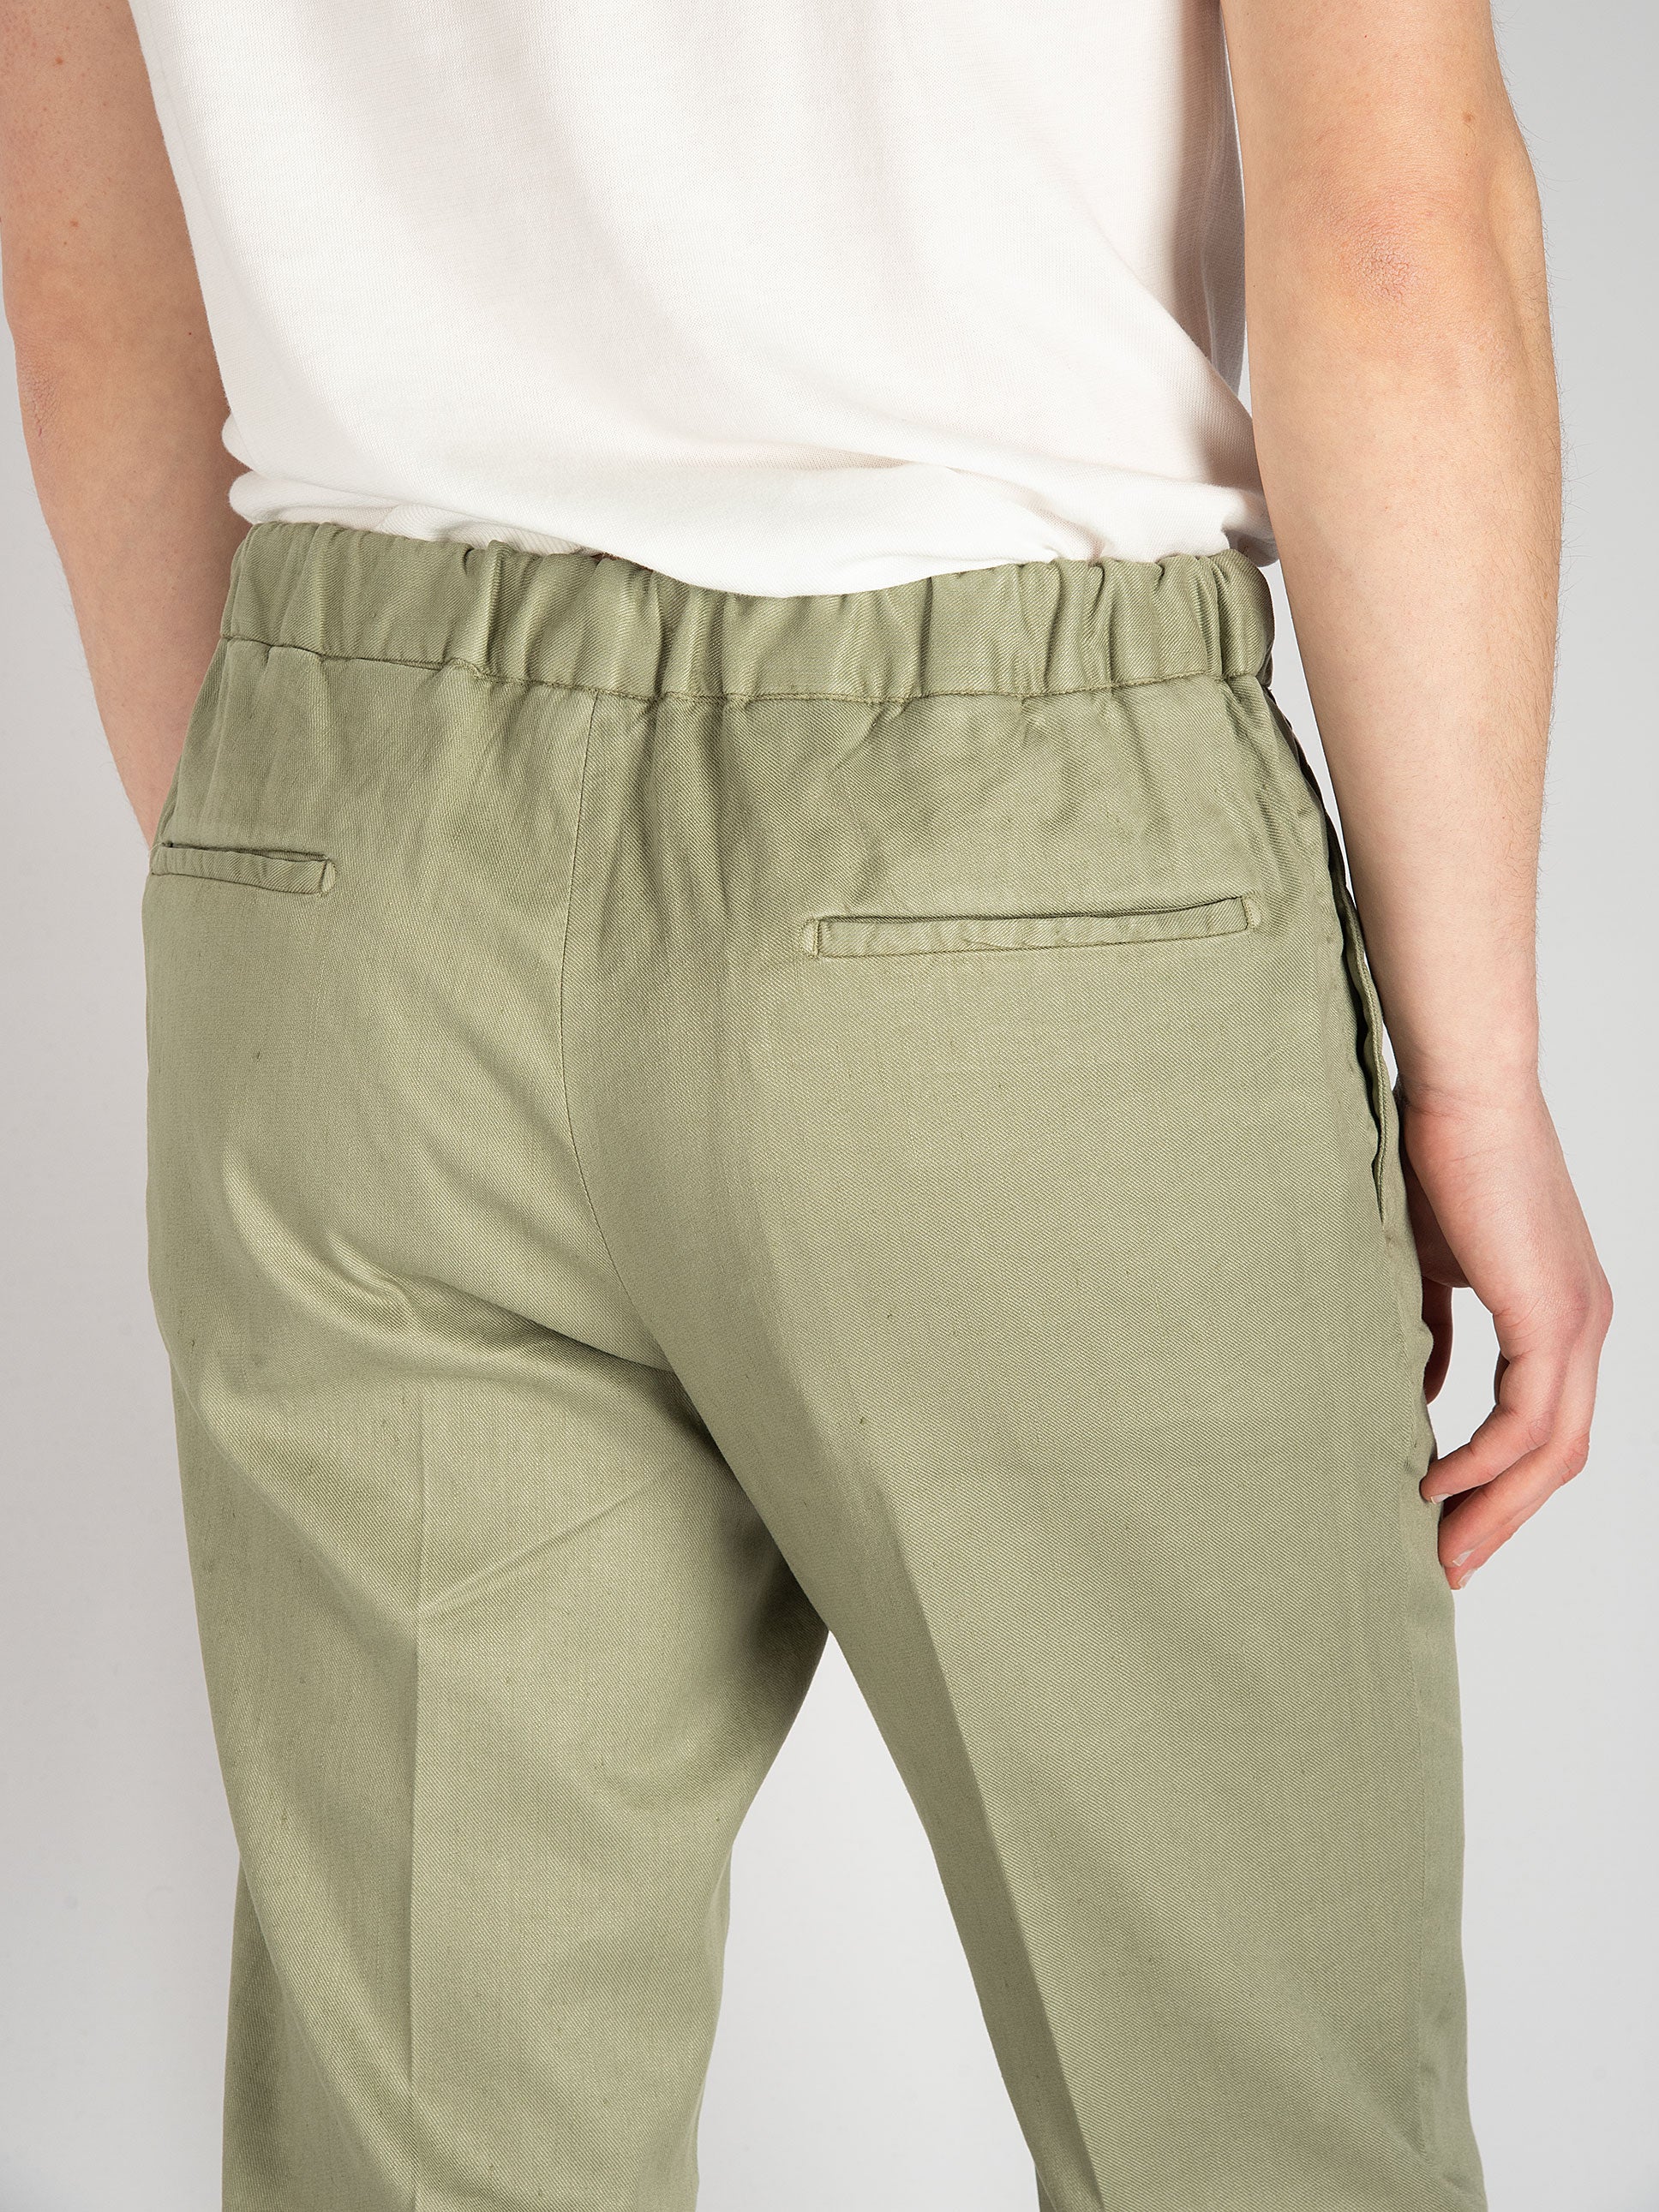 Pantalone DVR14 Cotone Lino - Verde Salvia